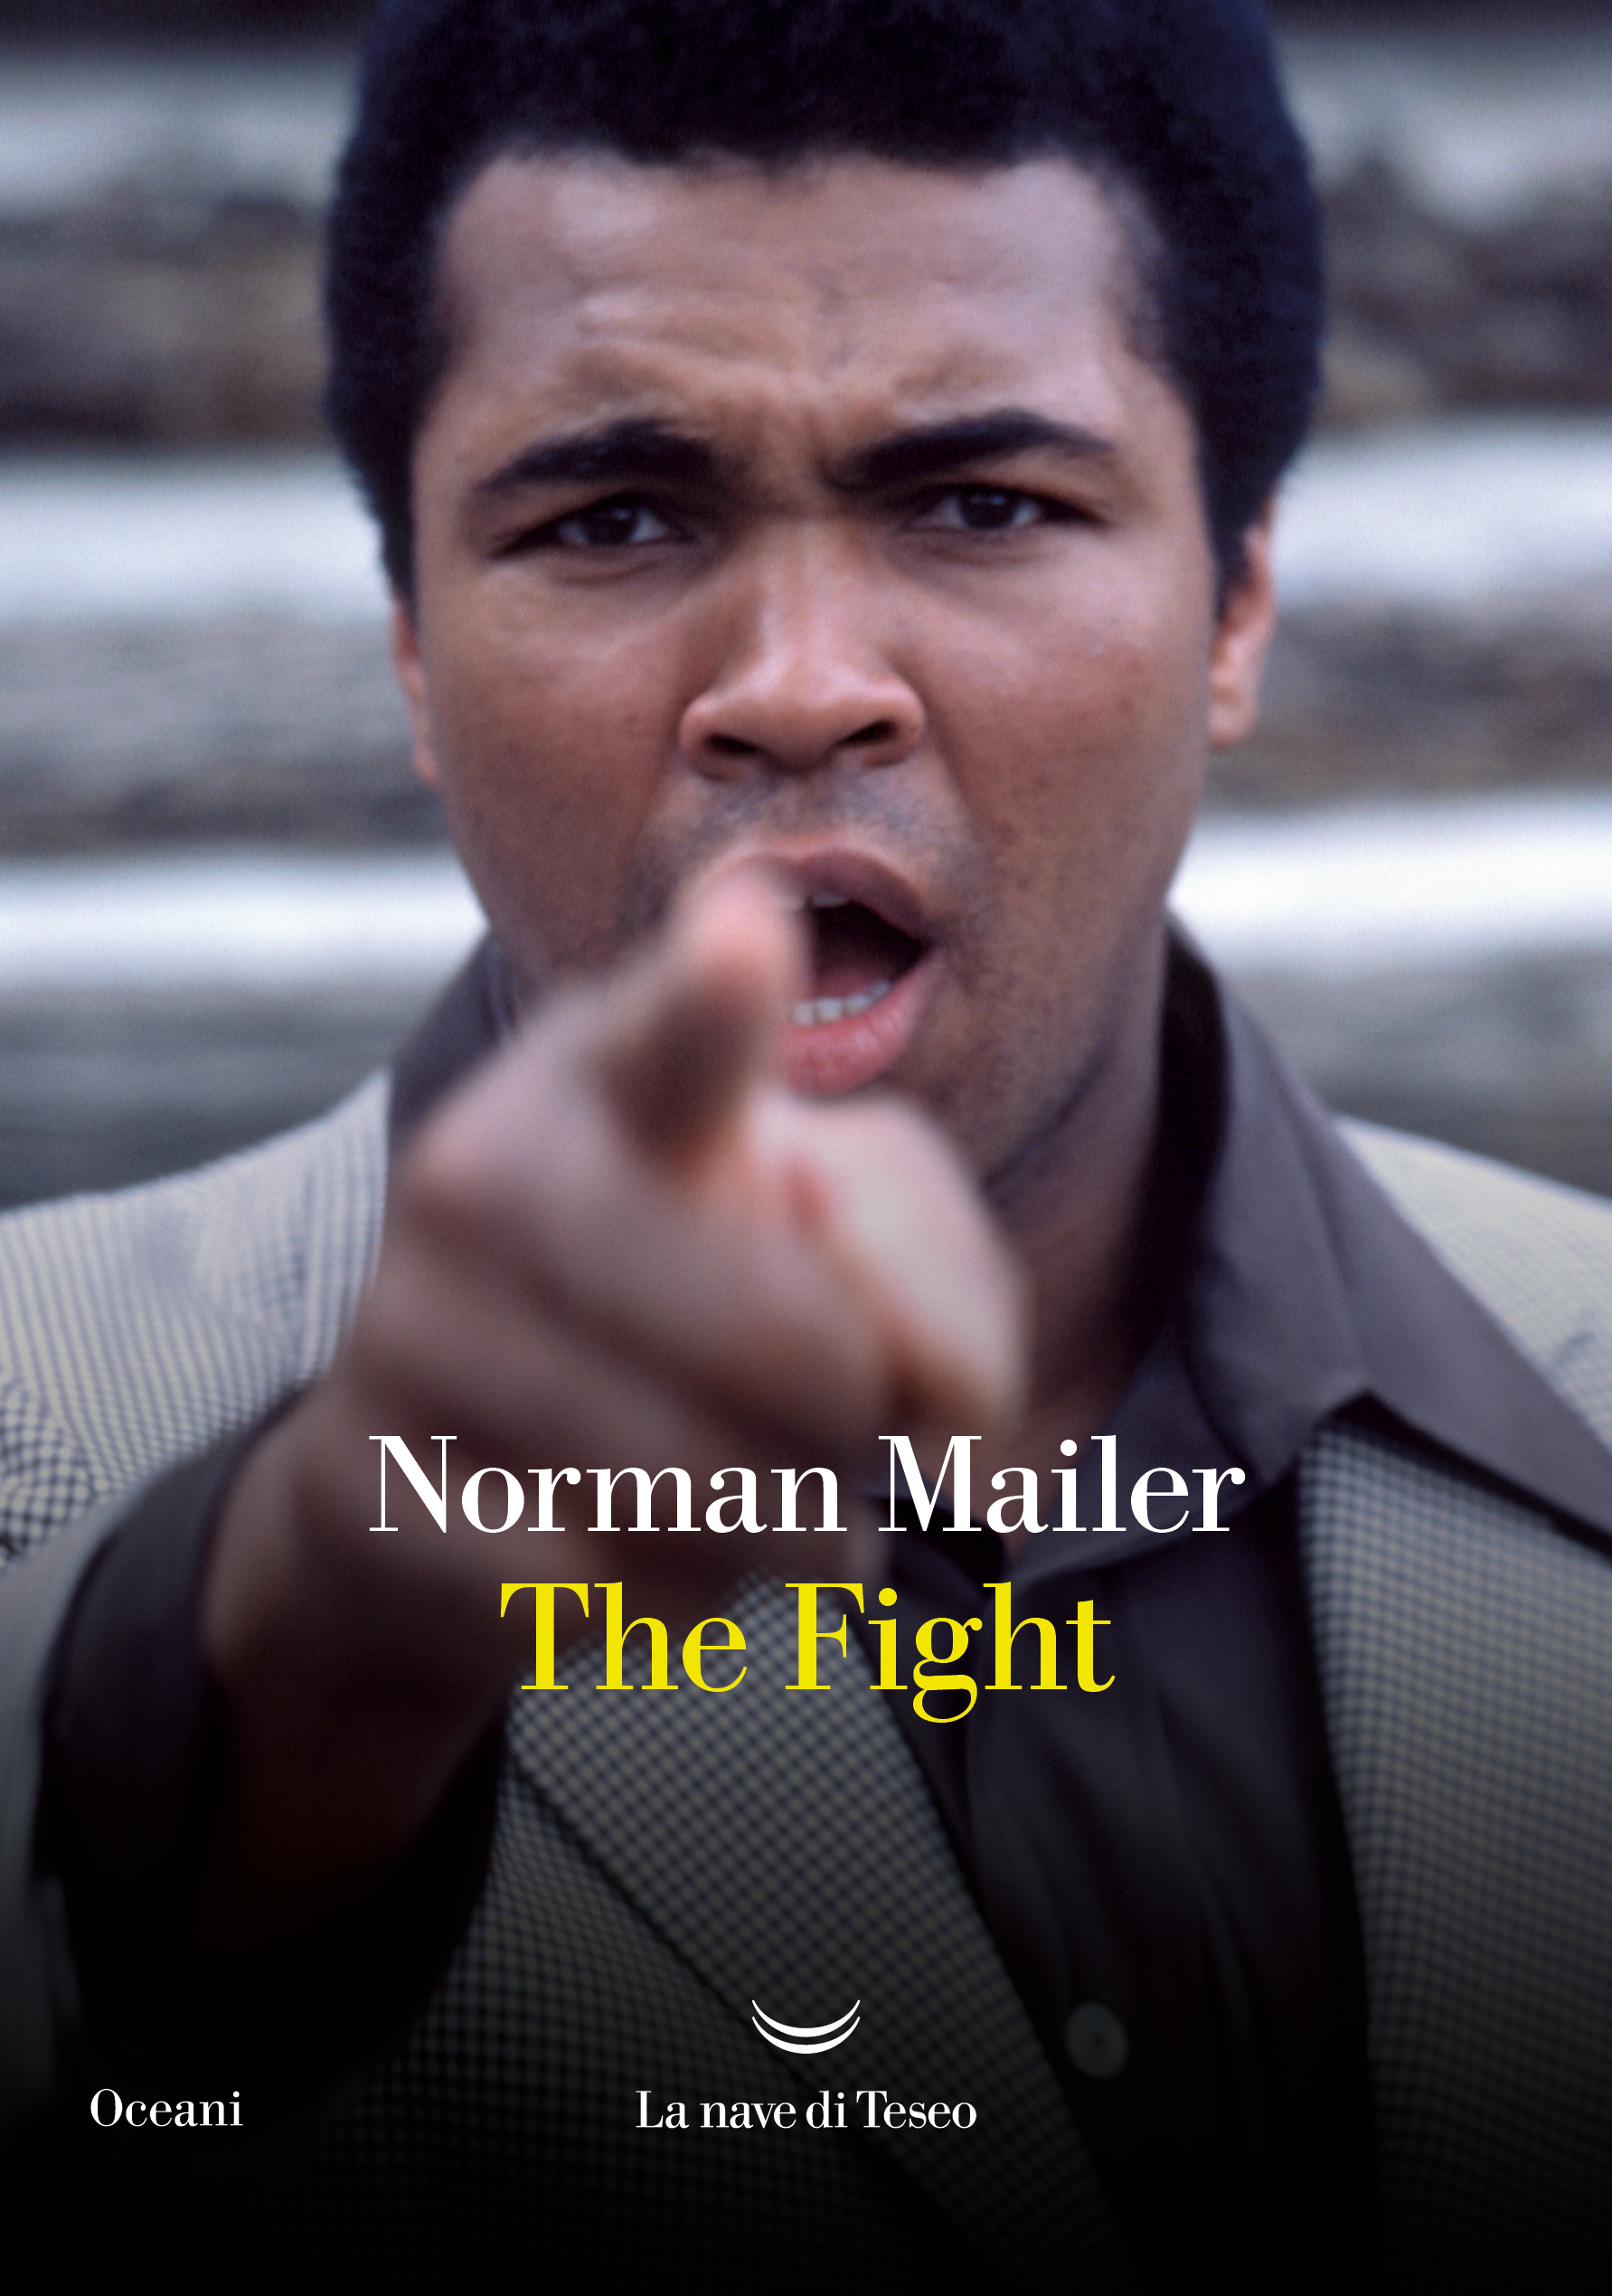 copertina del libro "The fight"